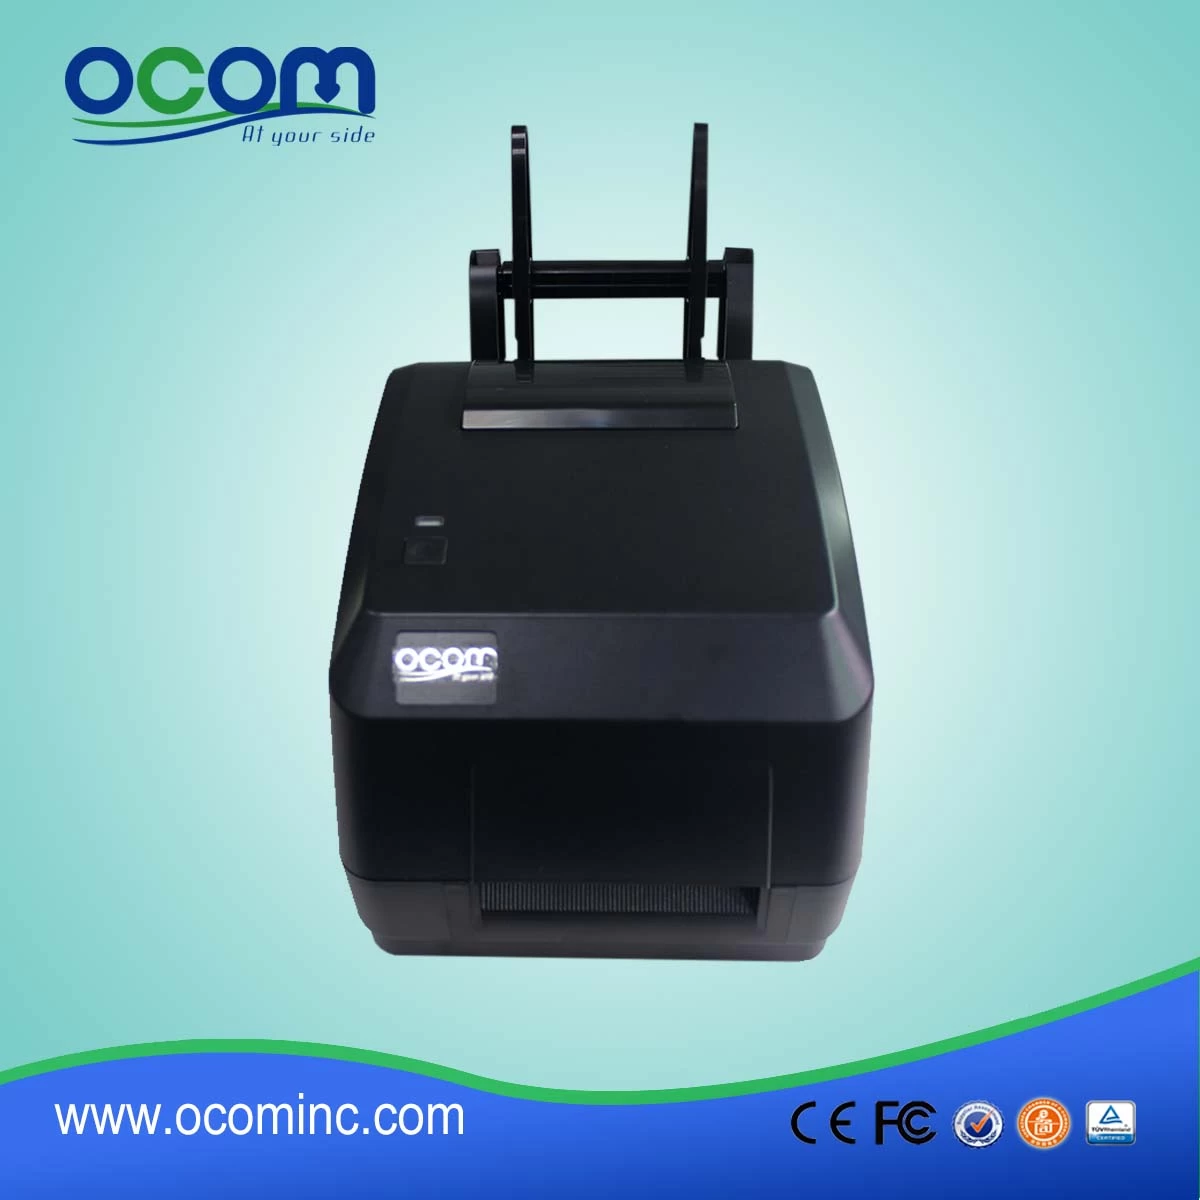 OCBP-004--2016 OCOM new design high quality date code printer